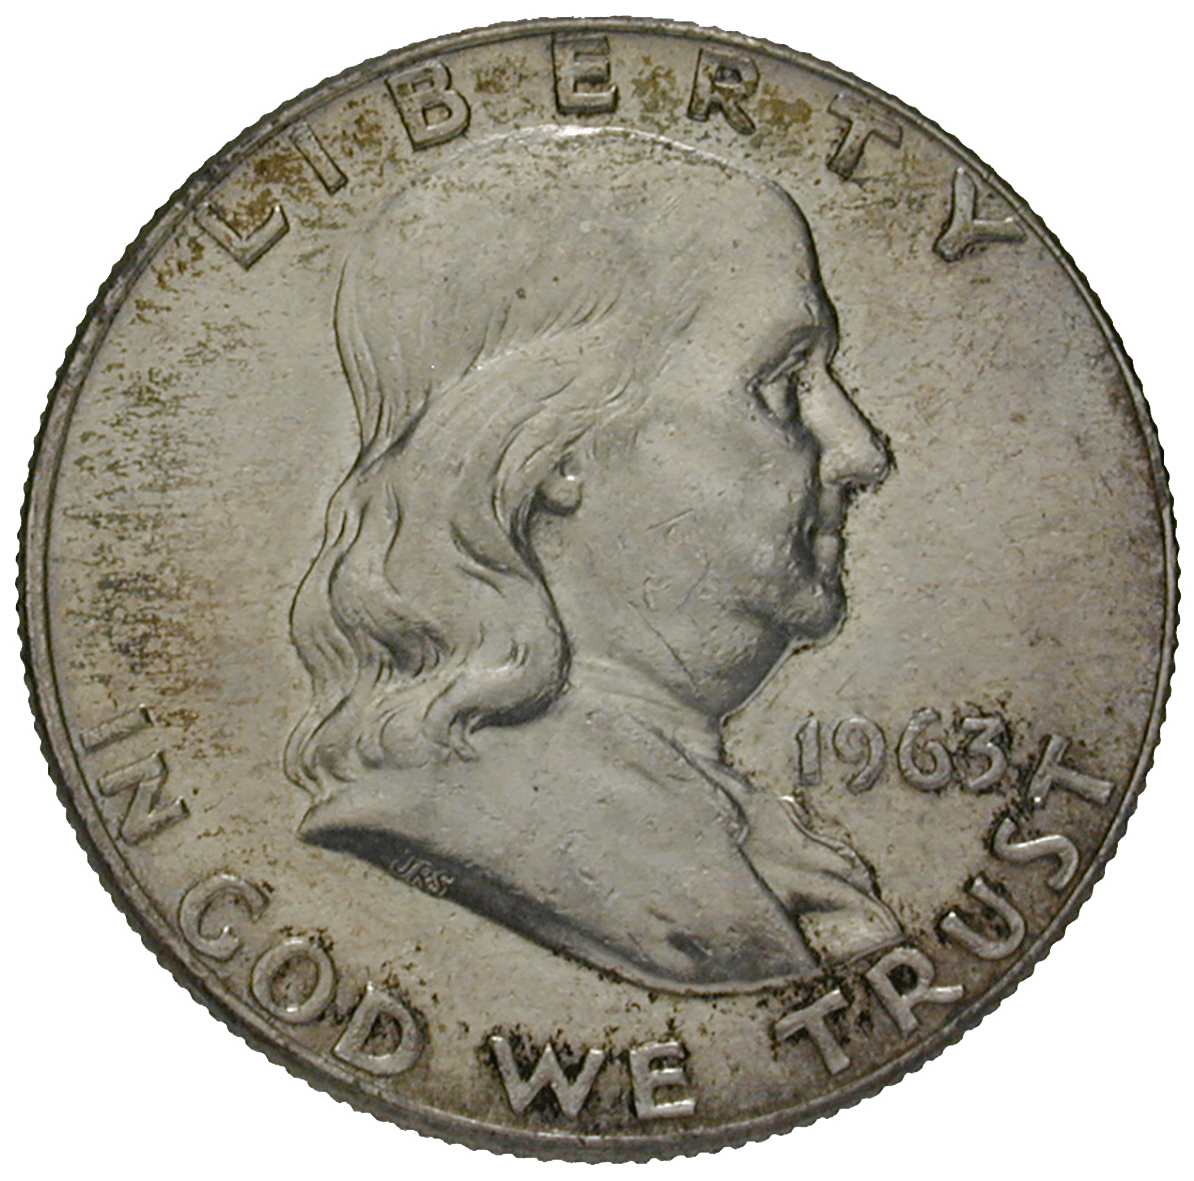 Vereinigte Staaten von Amerika, Half Dollar 1963 (obverse)